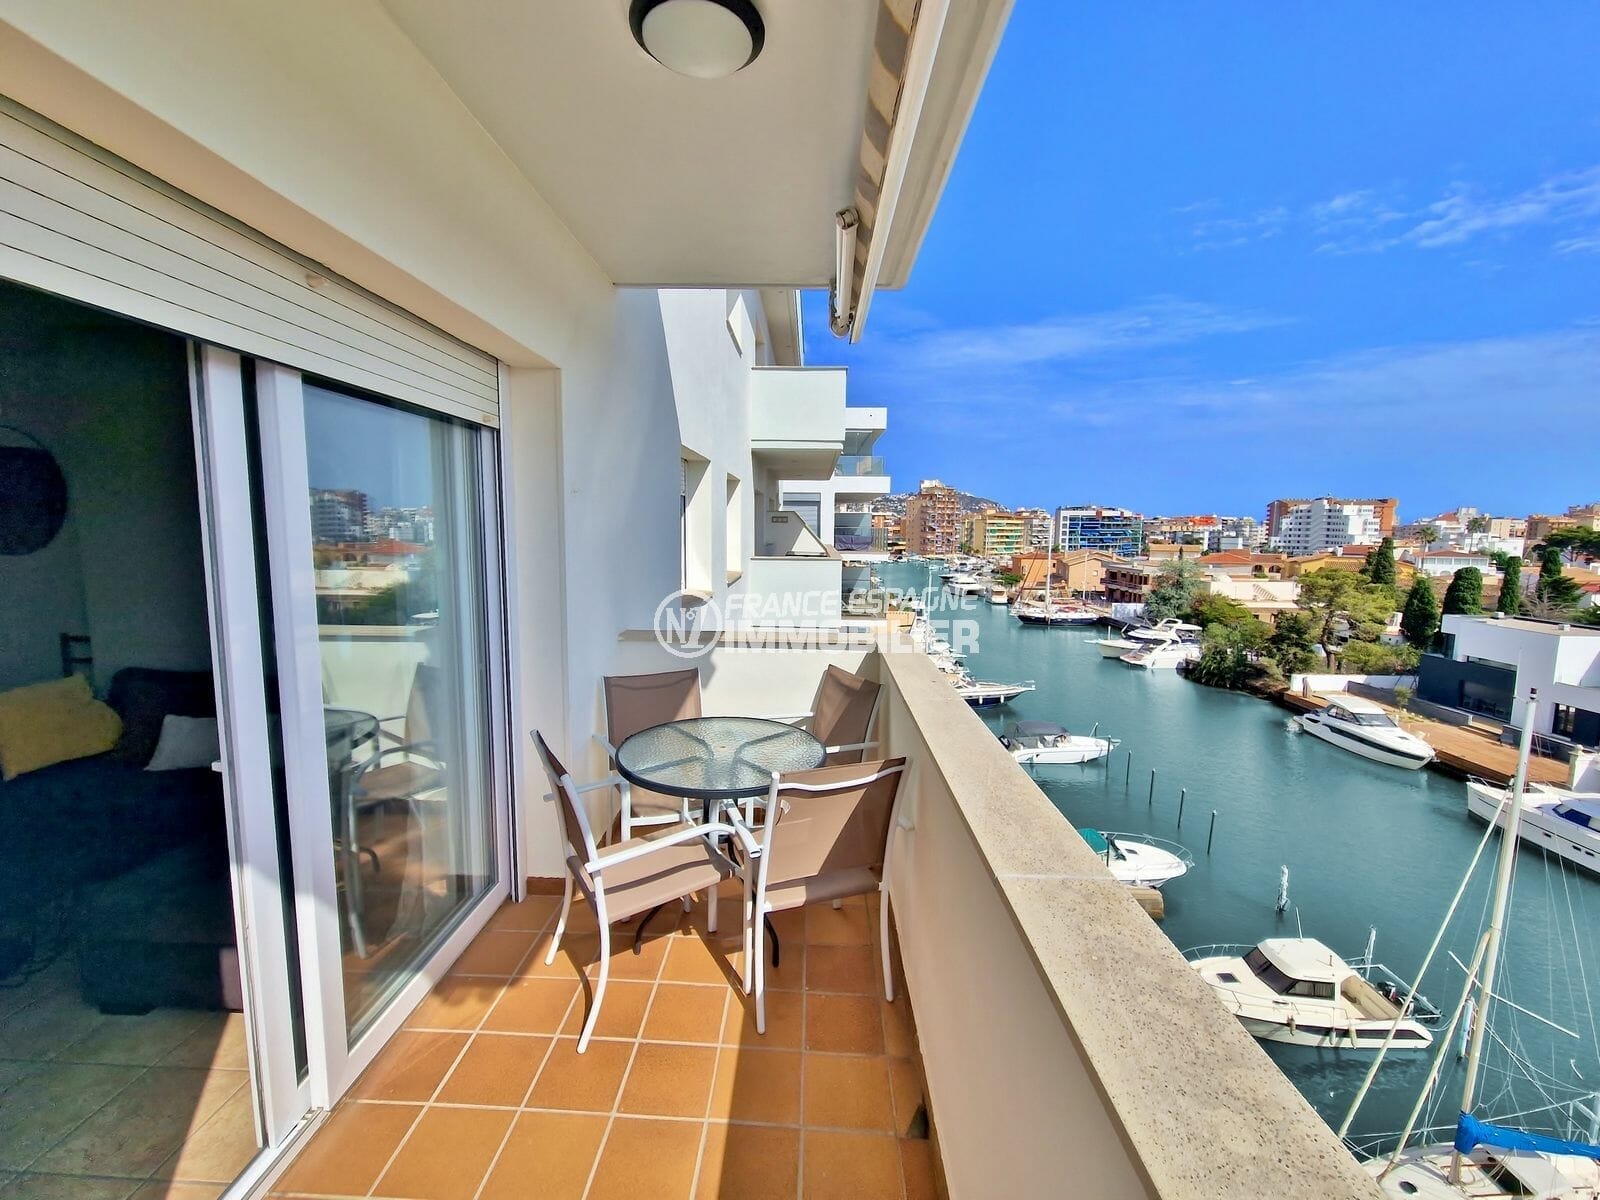 Rosas exclusivas - Apartamento de 3 dormitorios, terraza con vistas al canal, a 800m de la playa